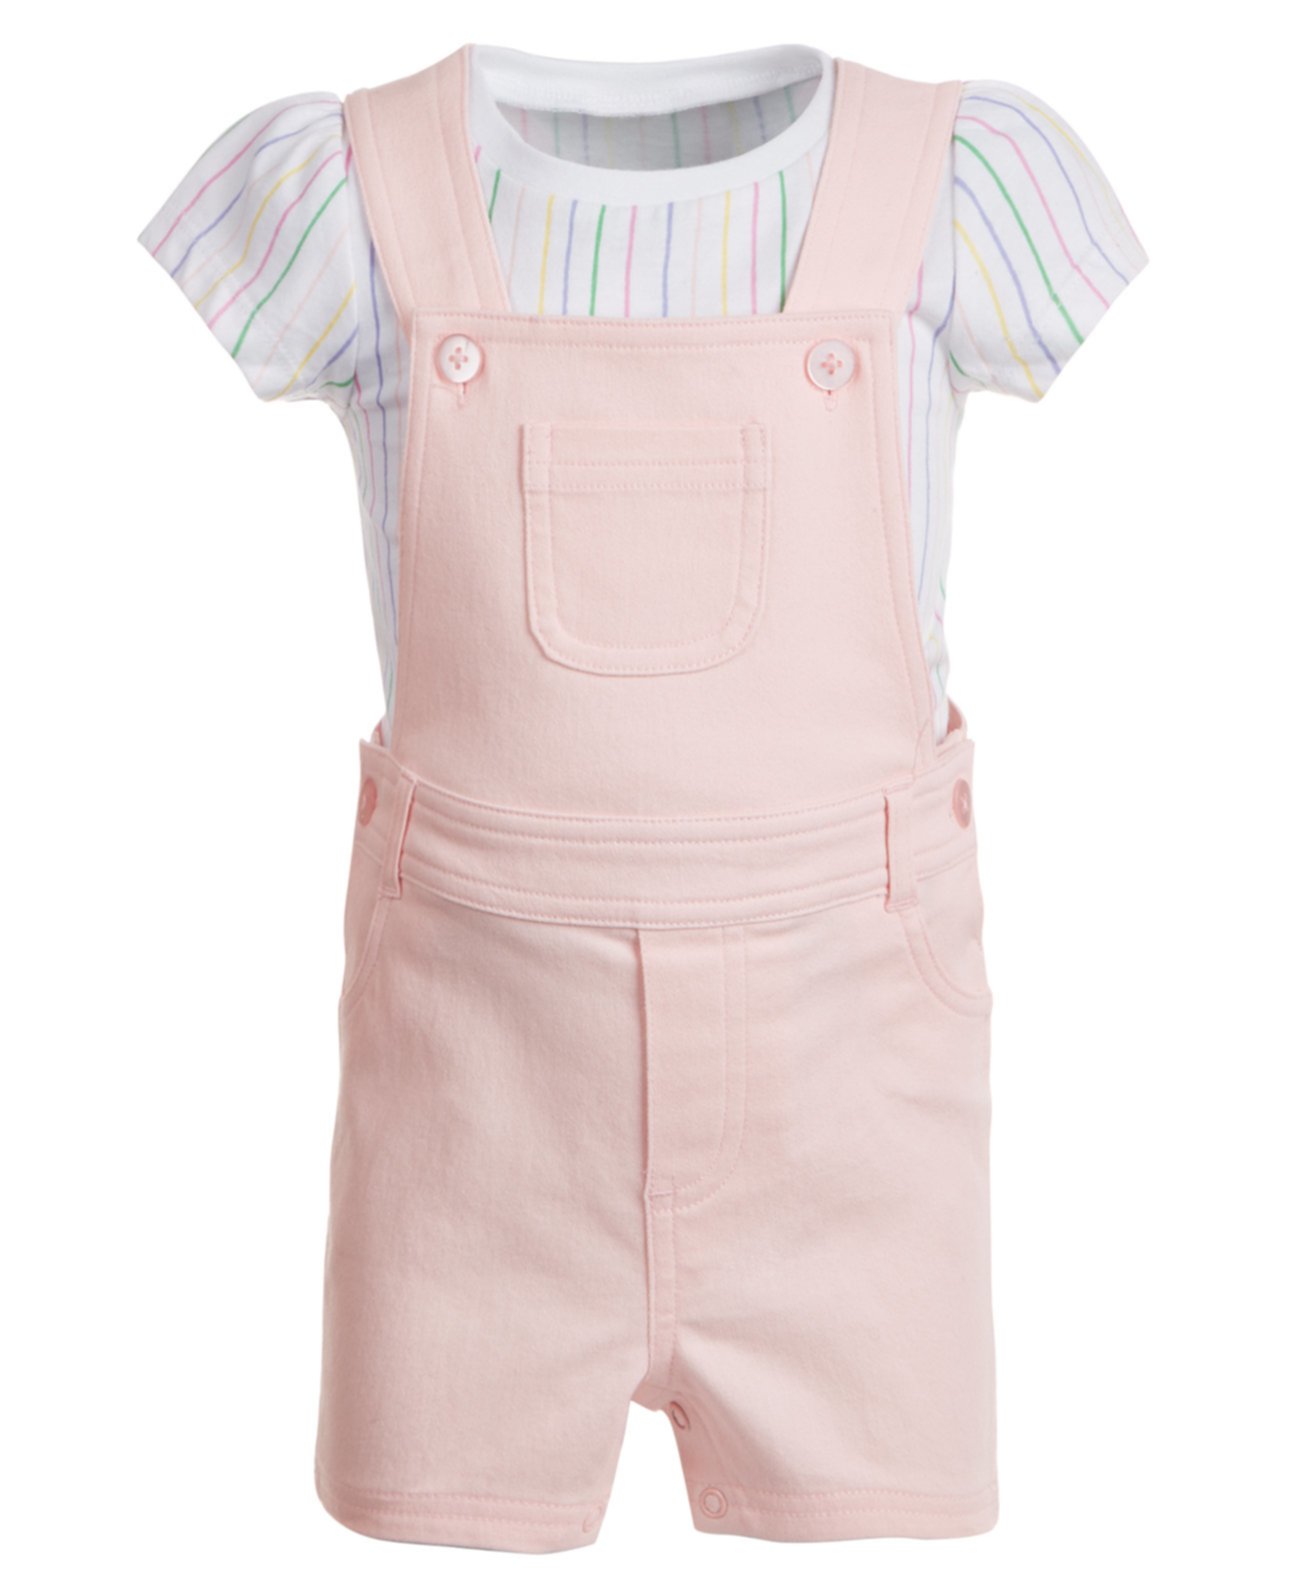 Baby Girls 2-шт. Полосатая футболка и короткий набор, созданный для Macy's First Impressions